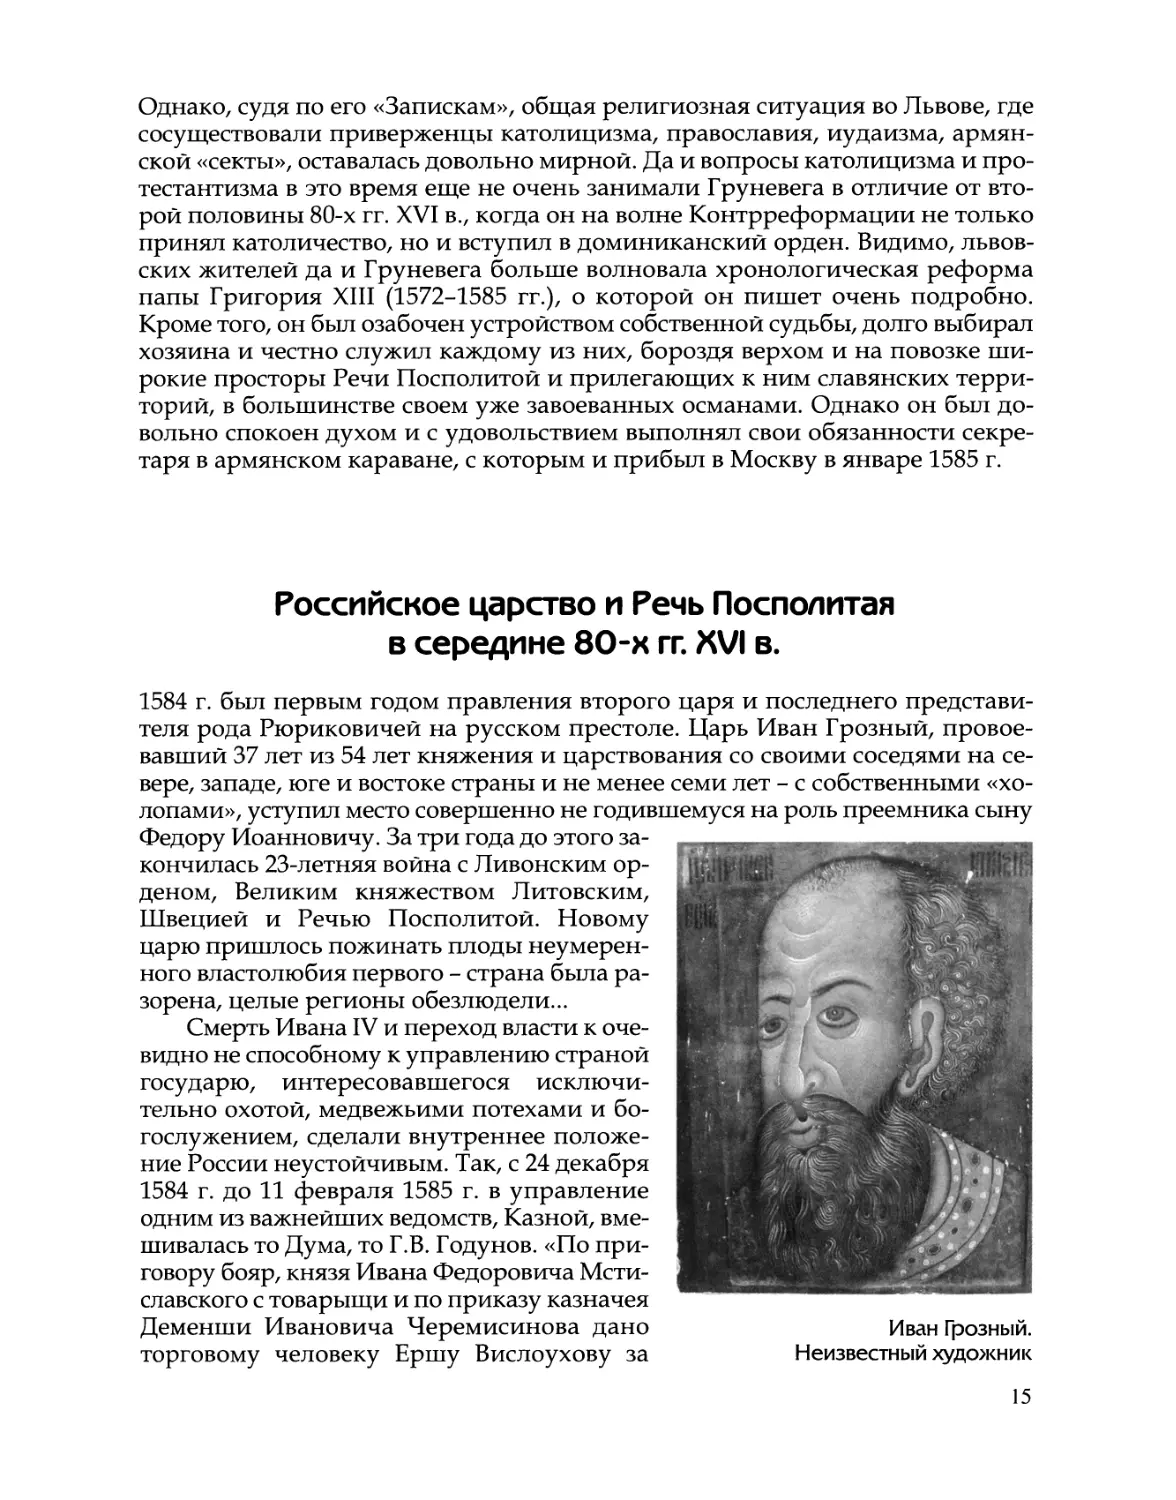 Российское царство и Речь Посполитая в середине 80-х гг. XVI в